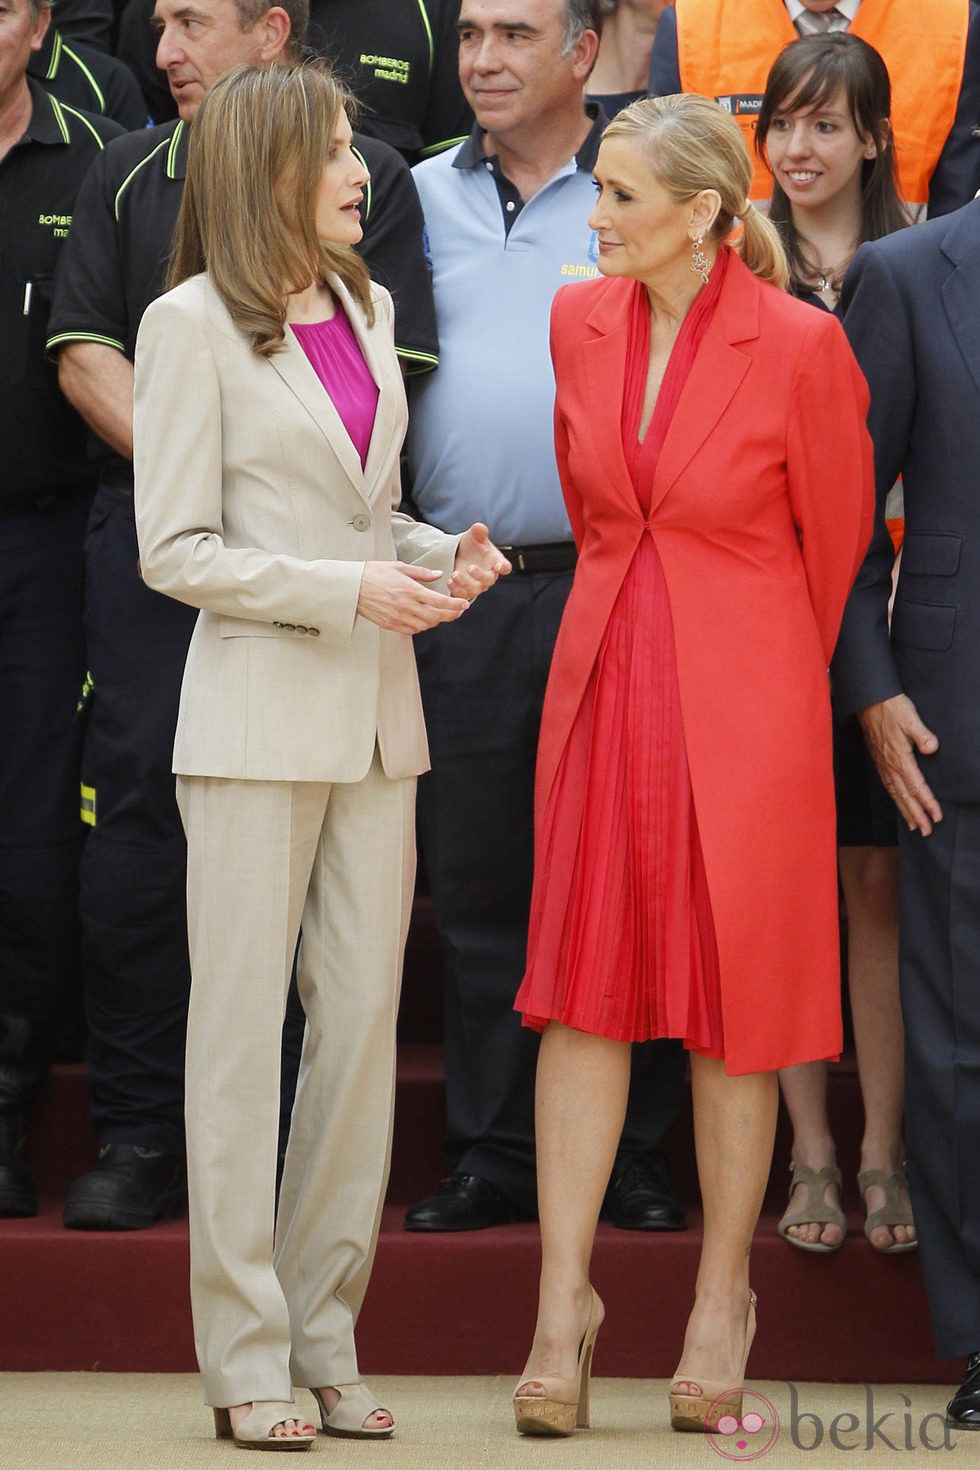 La Reina Letizia charla con Cristina Cifuentes en un acto oficial